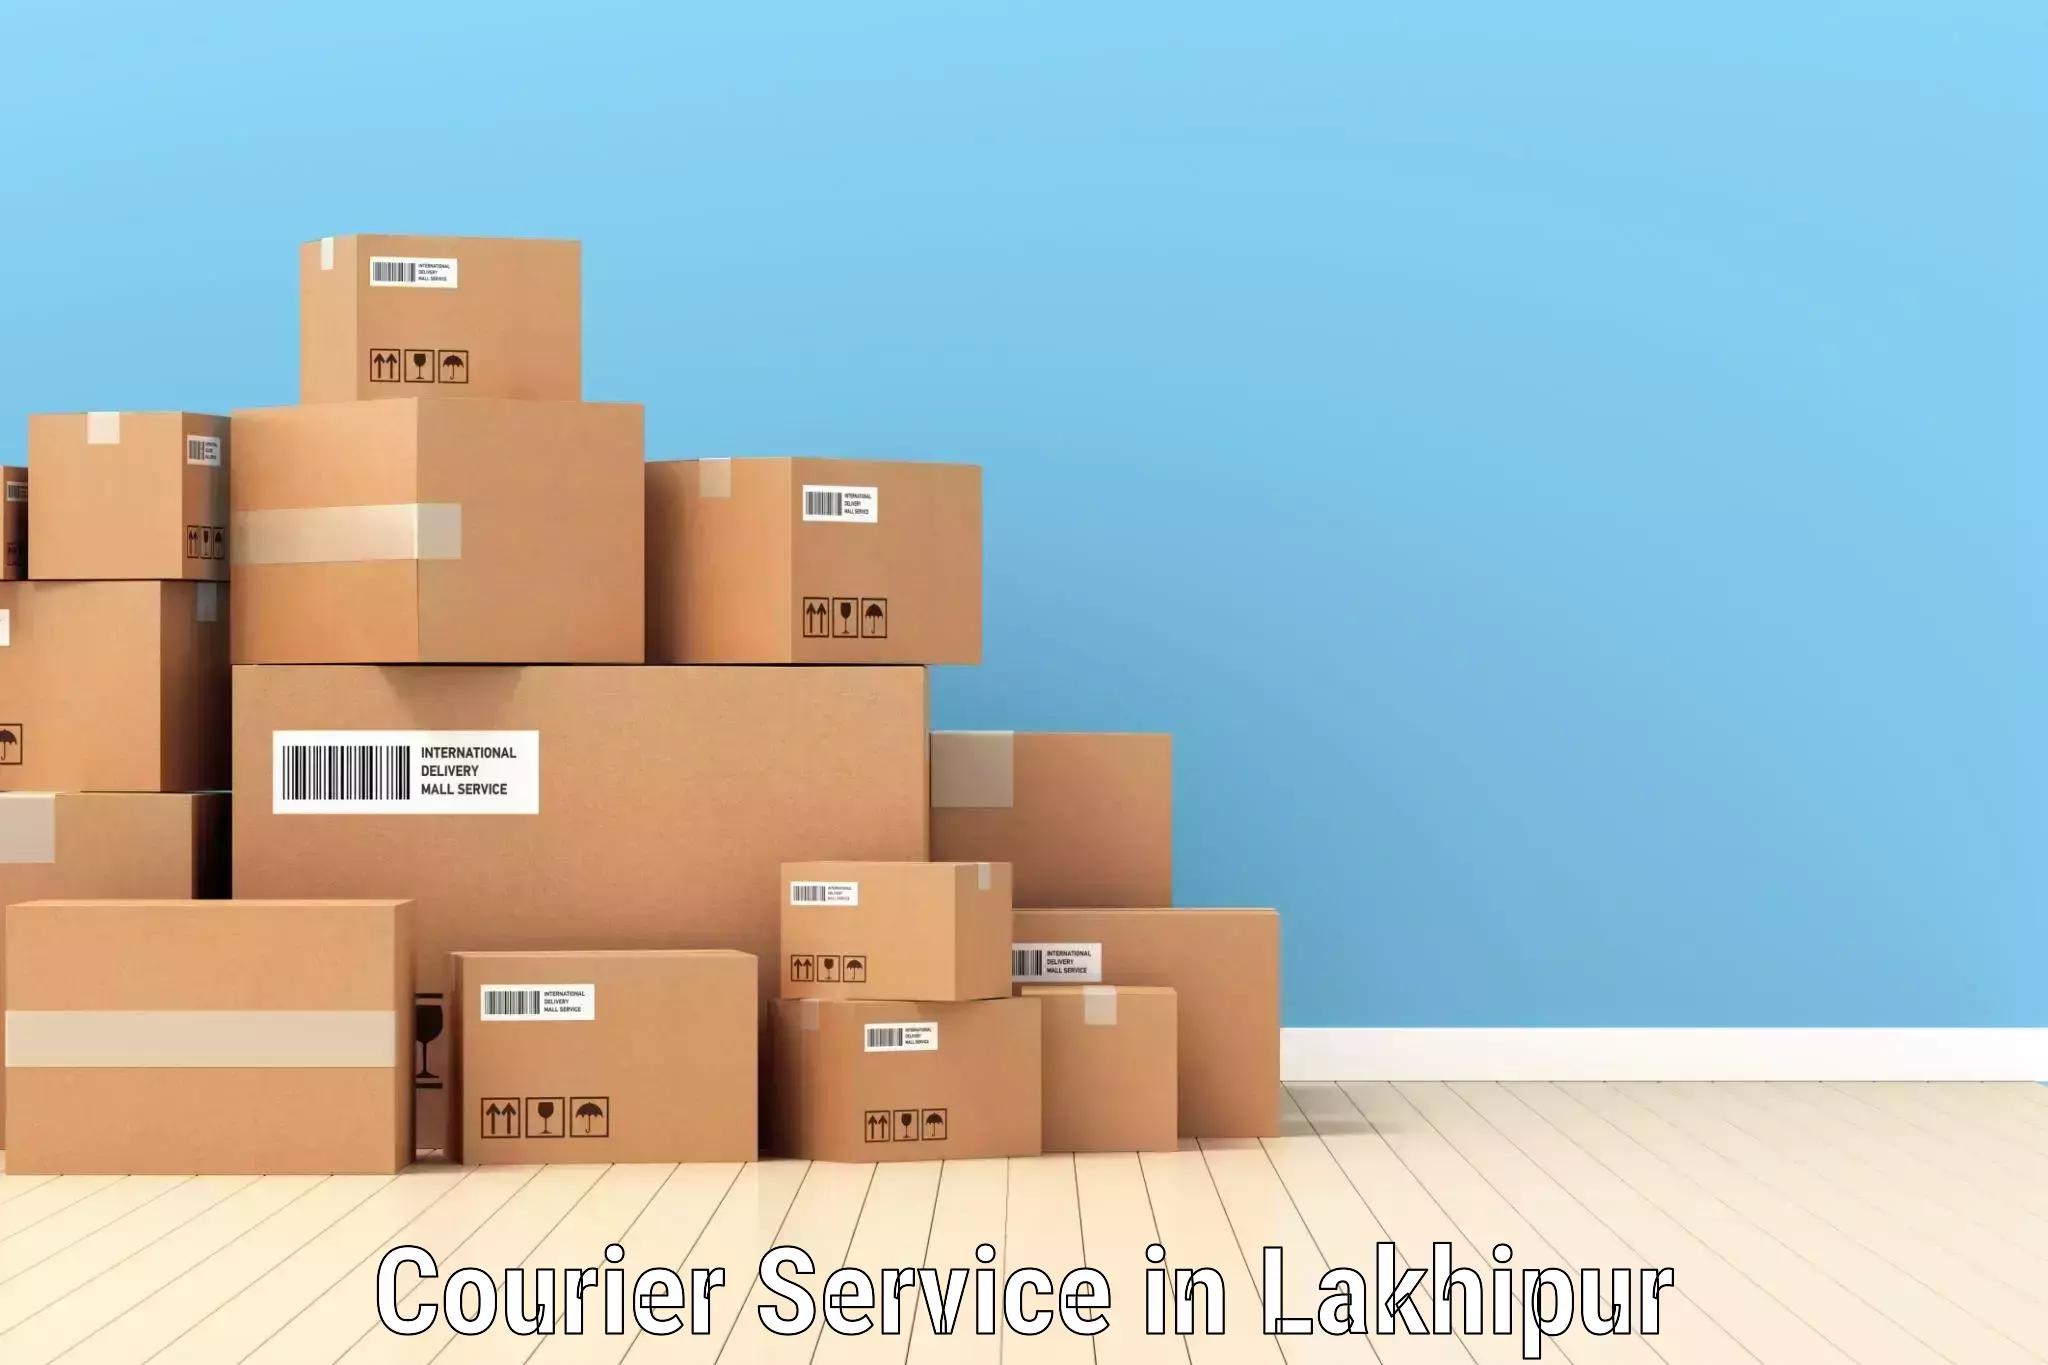 Comprehensive parcel tracking in Lakhipur